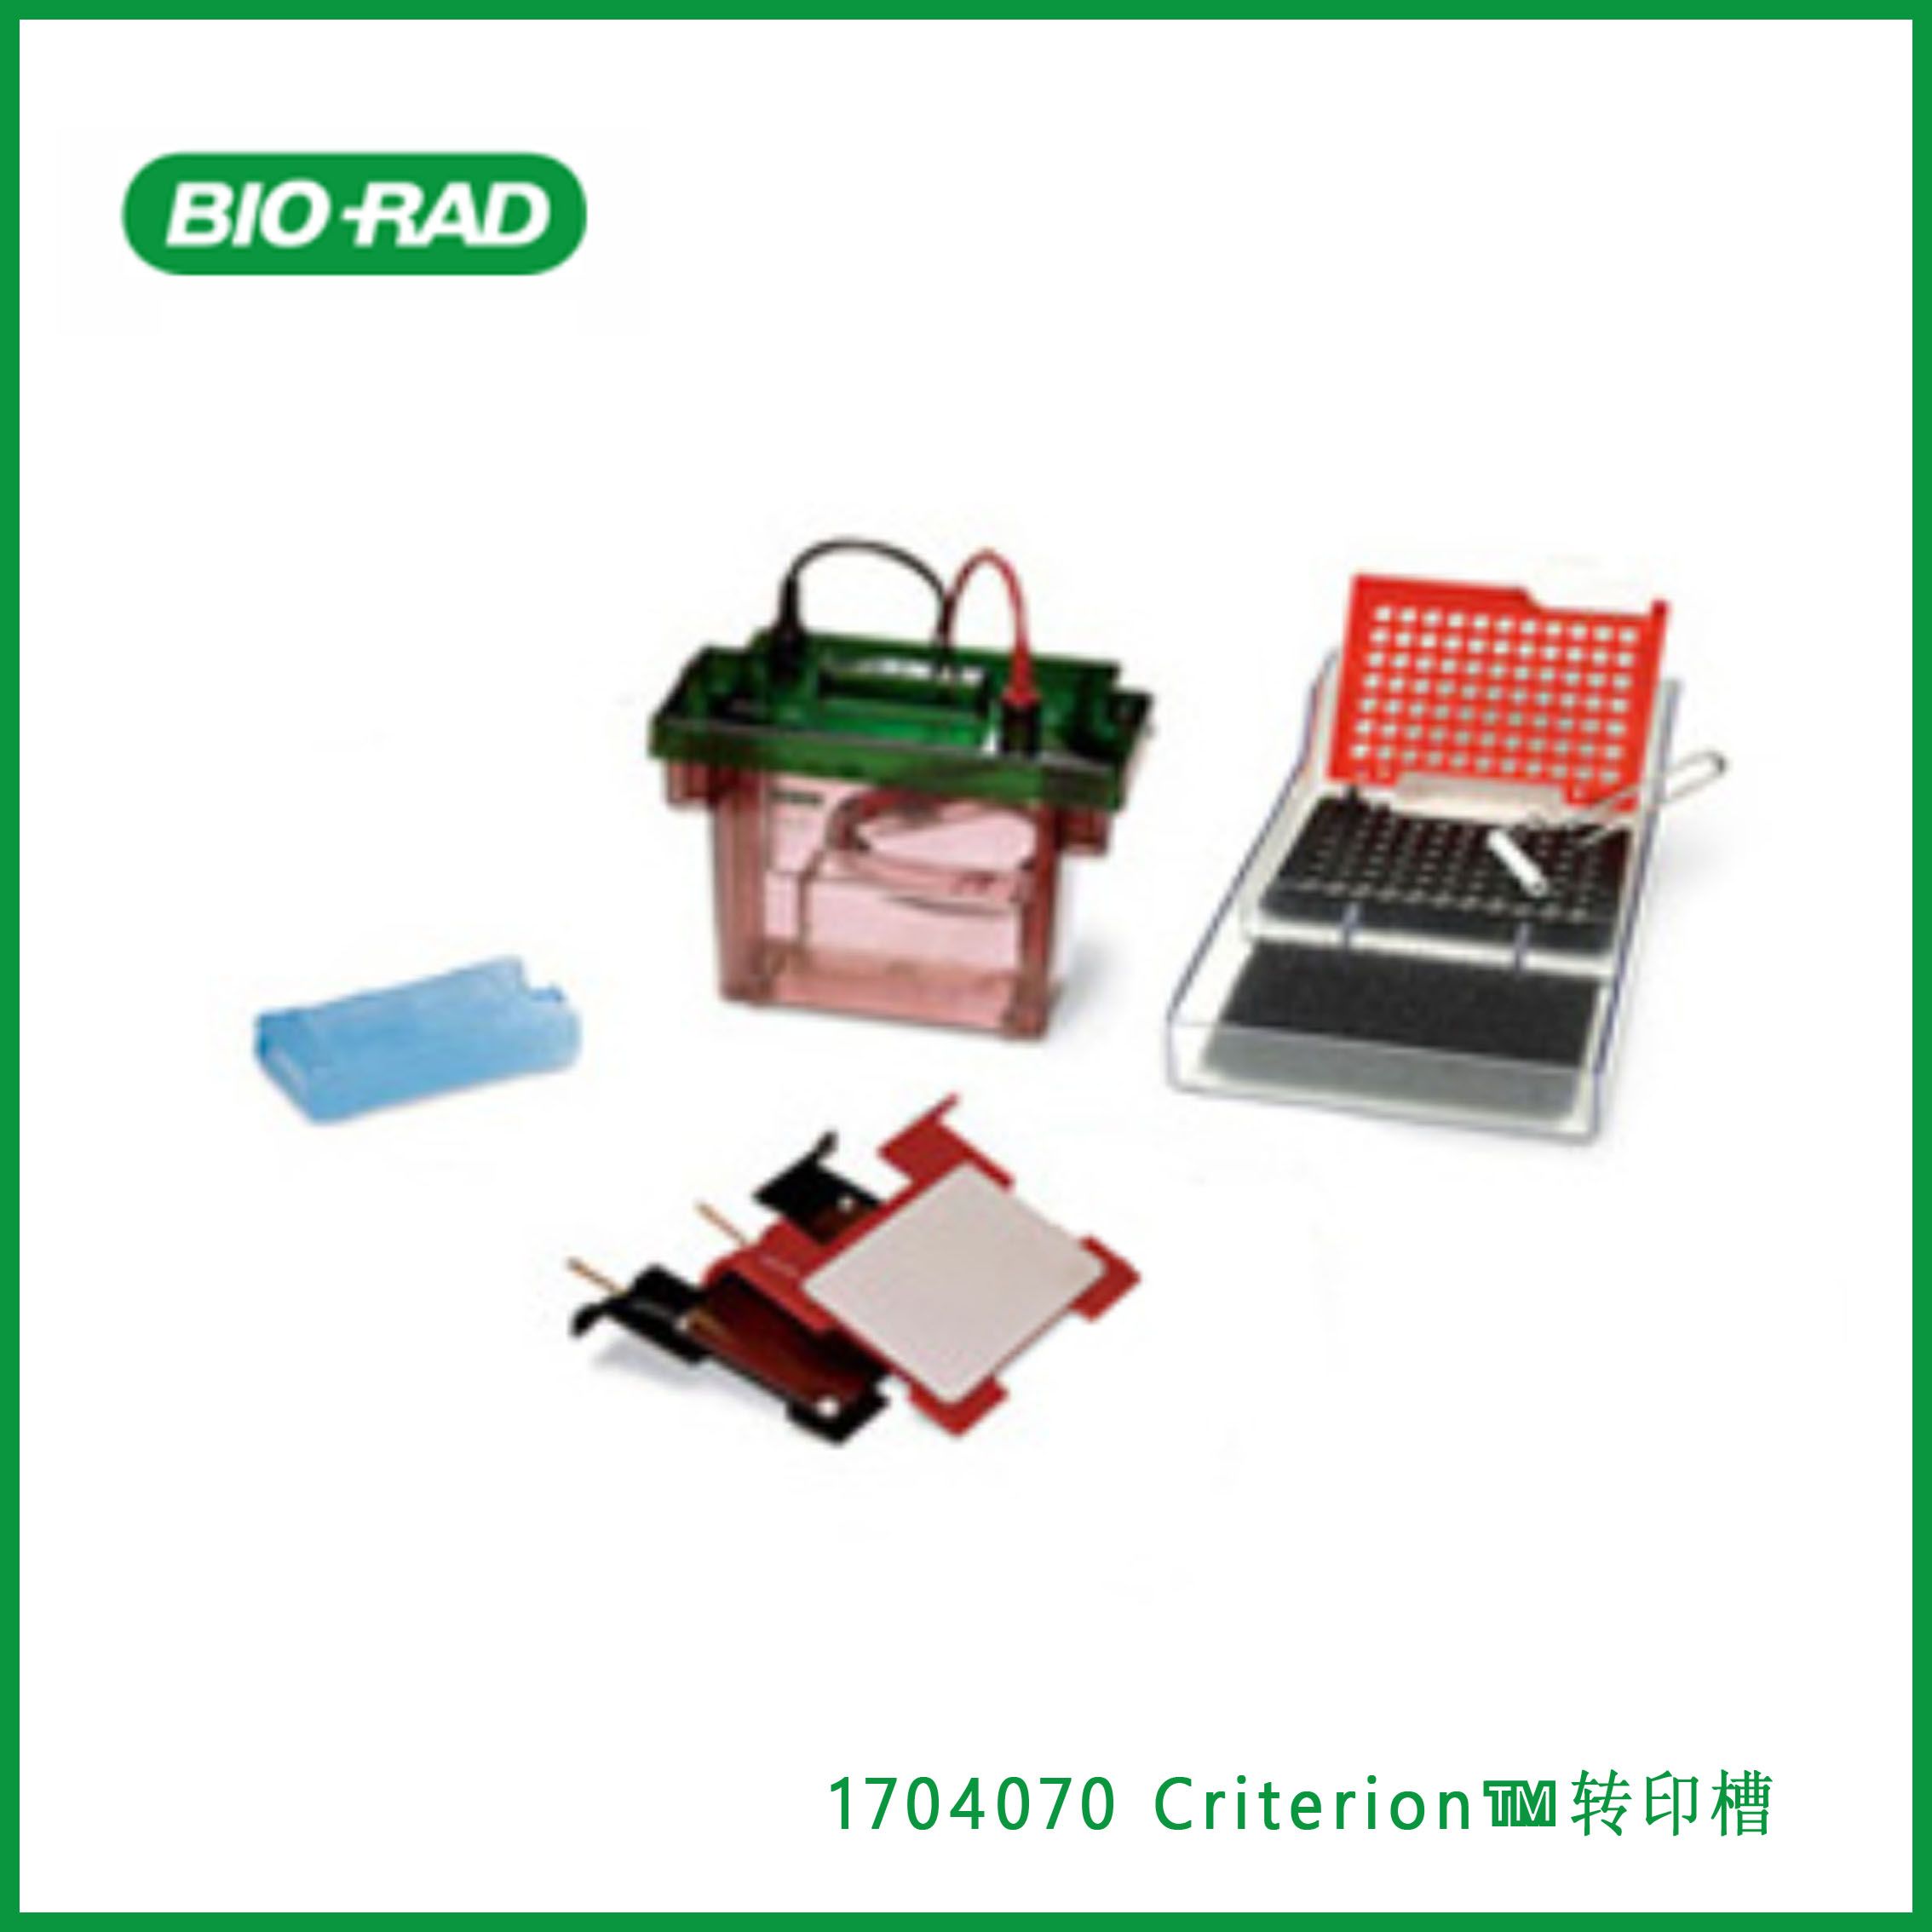 伯乐Bio-Rad1704070 Criterion™ Blotter With Plate Electrodes，Criterion™转印槽，现货